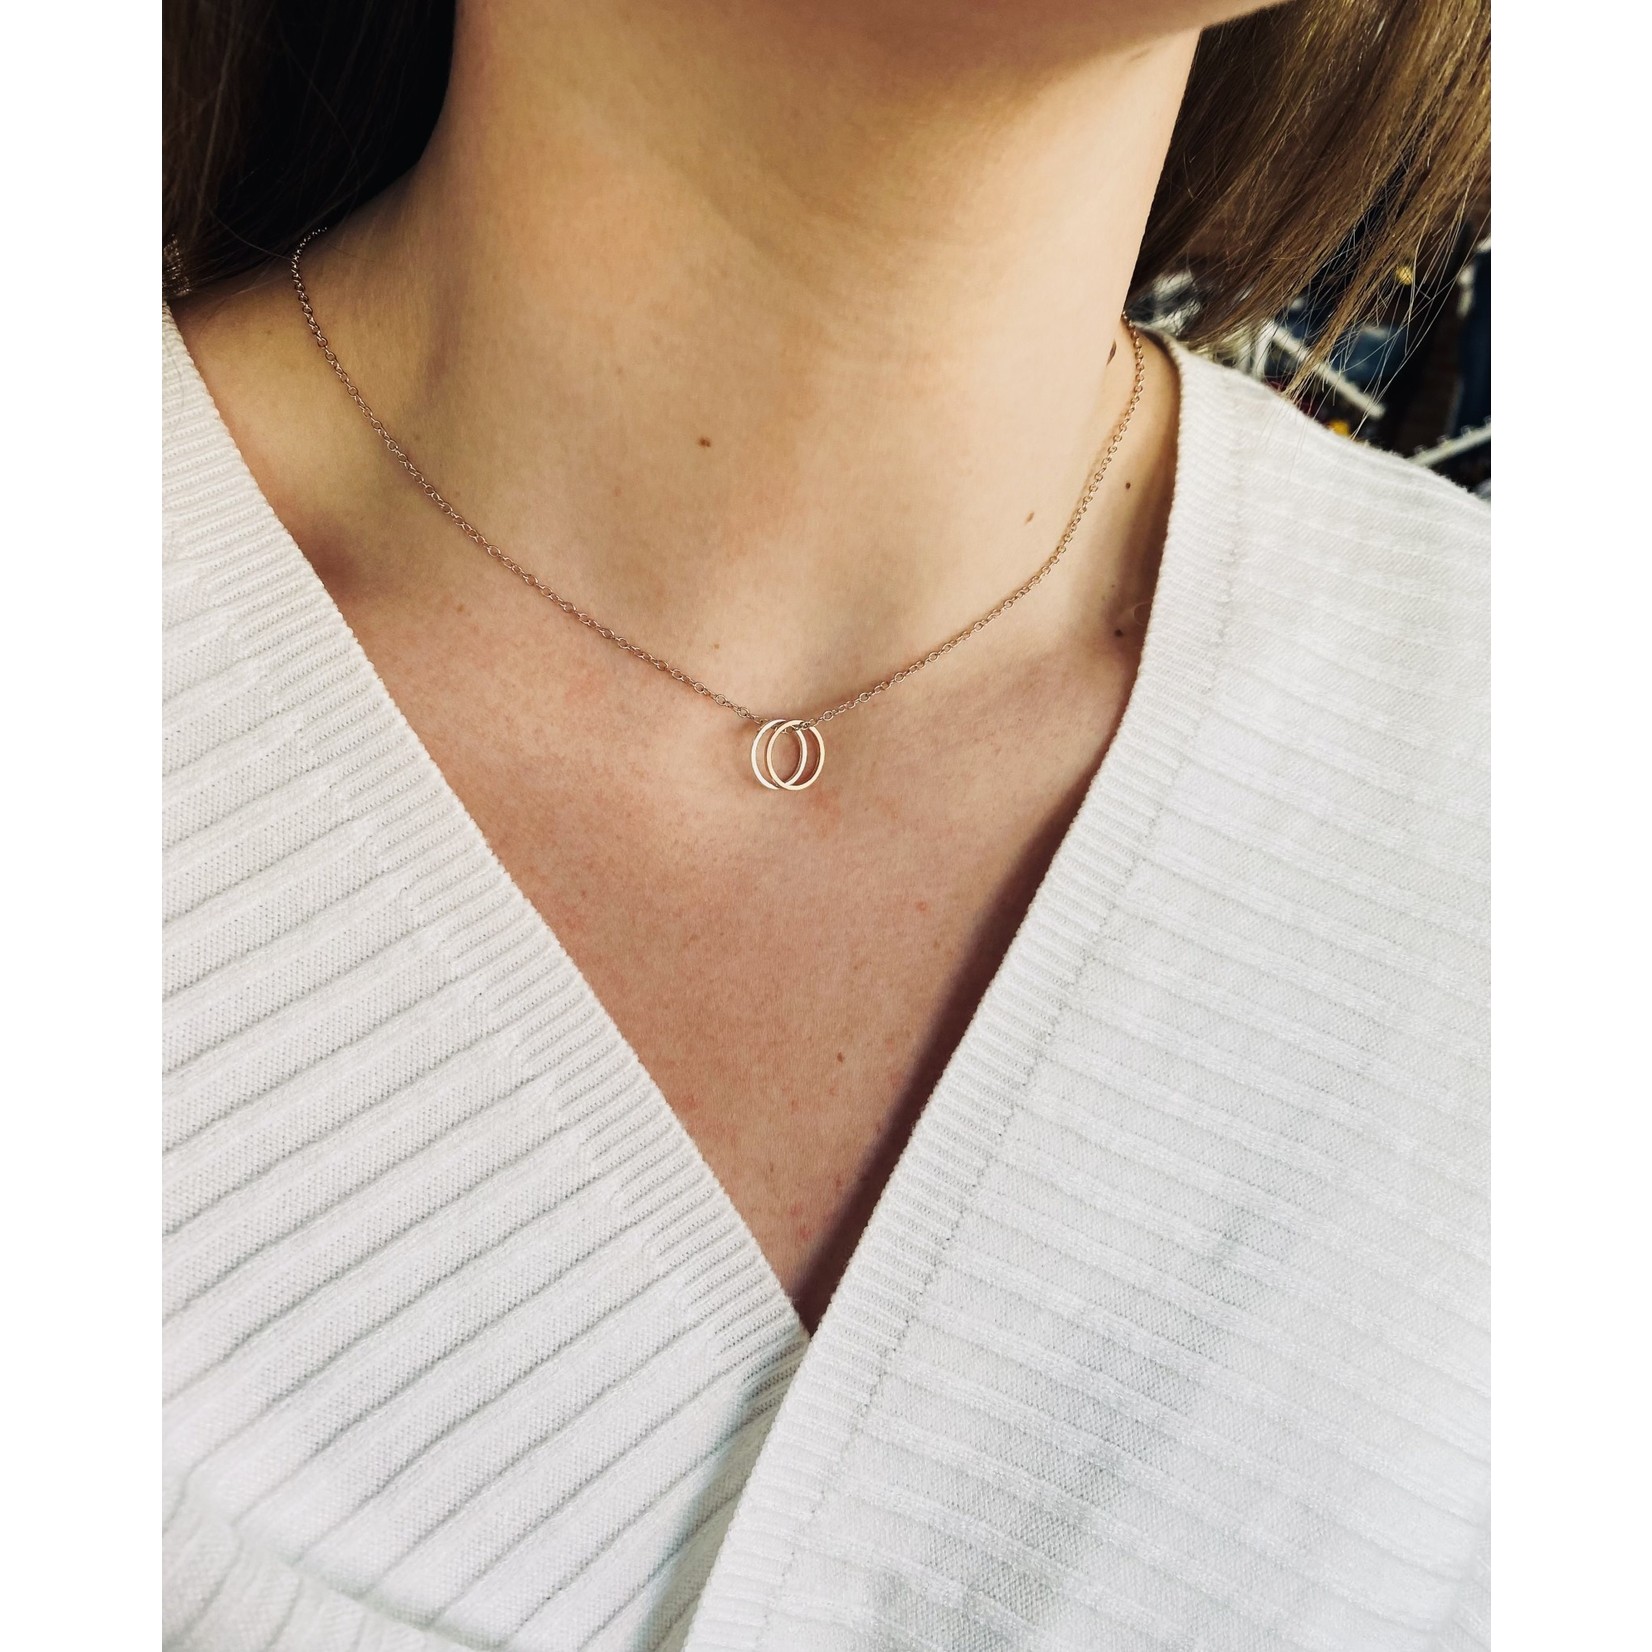 Lauren Lane Double Karma Interlocking Rings Necklace - Rose Gold